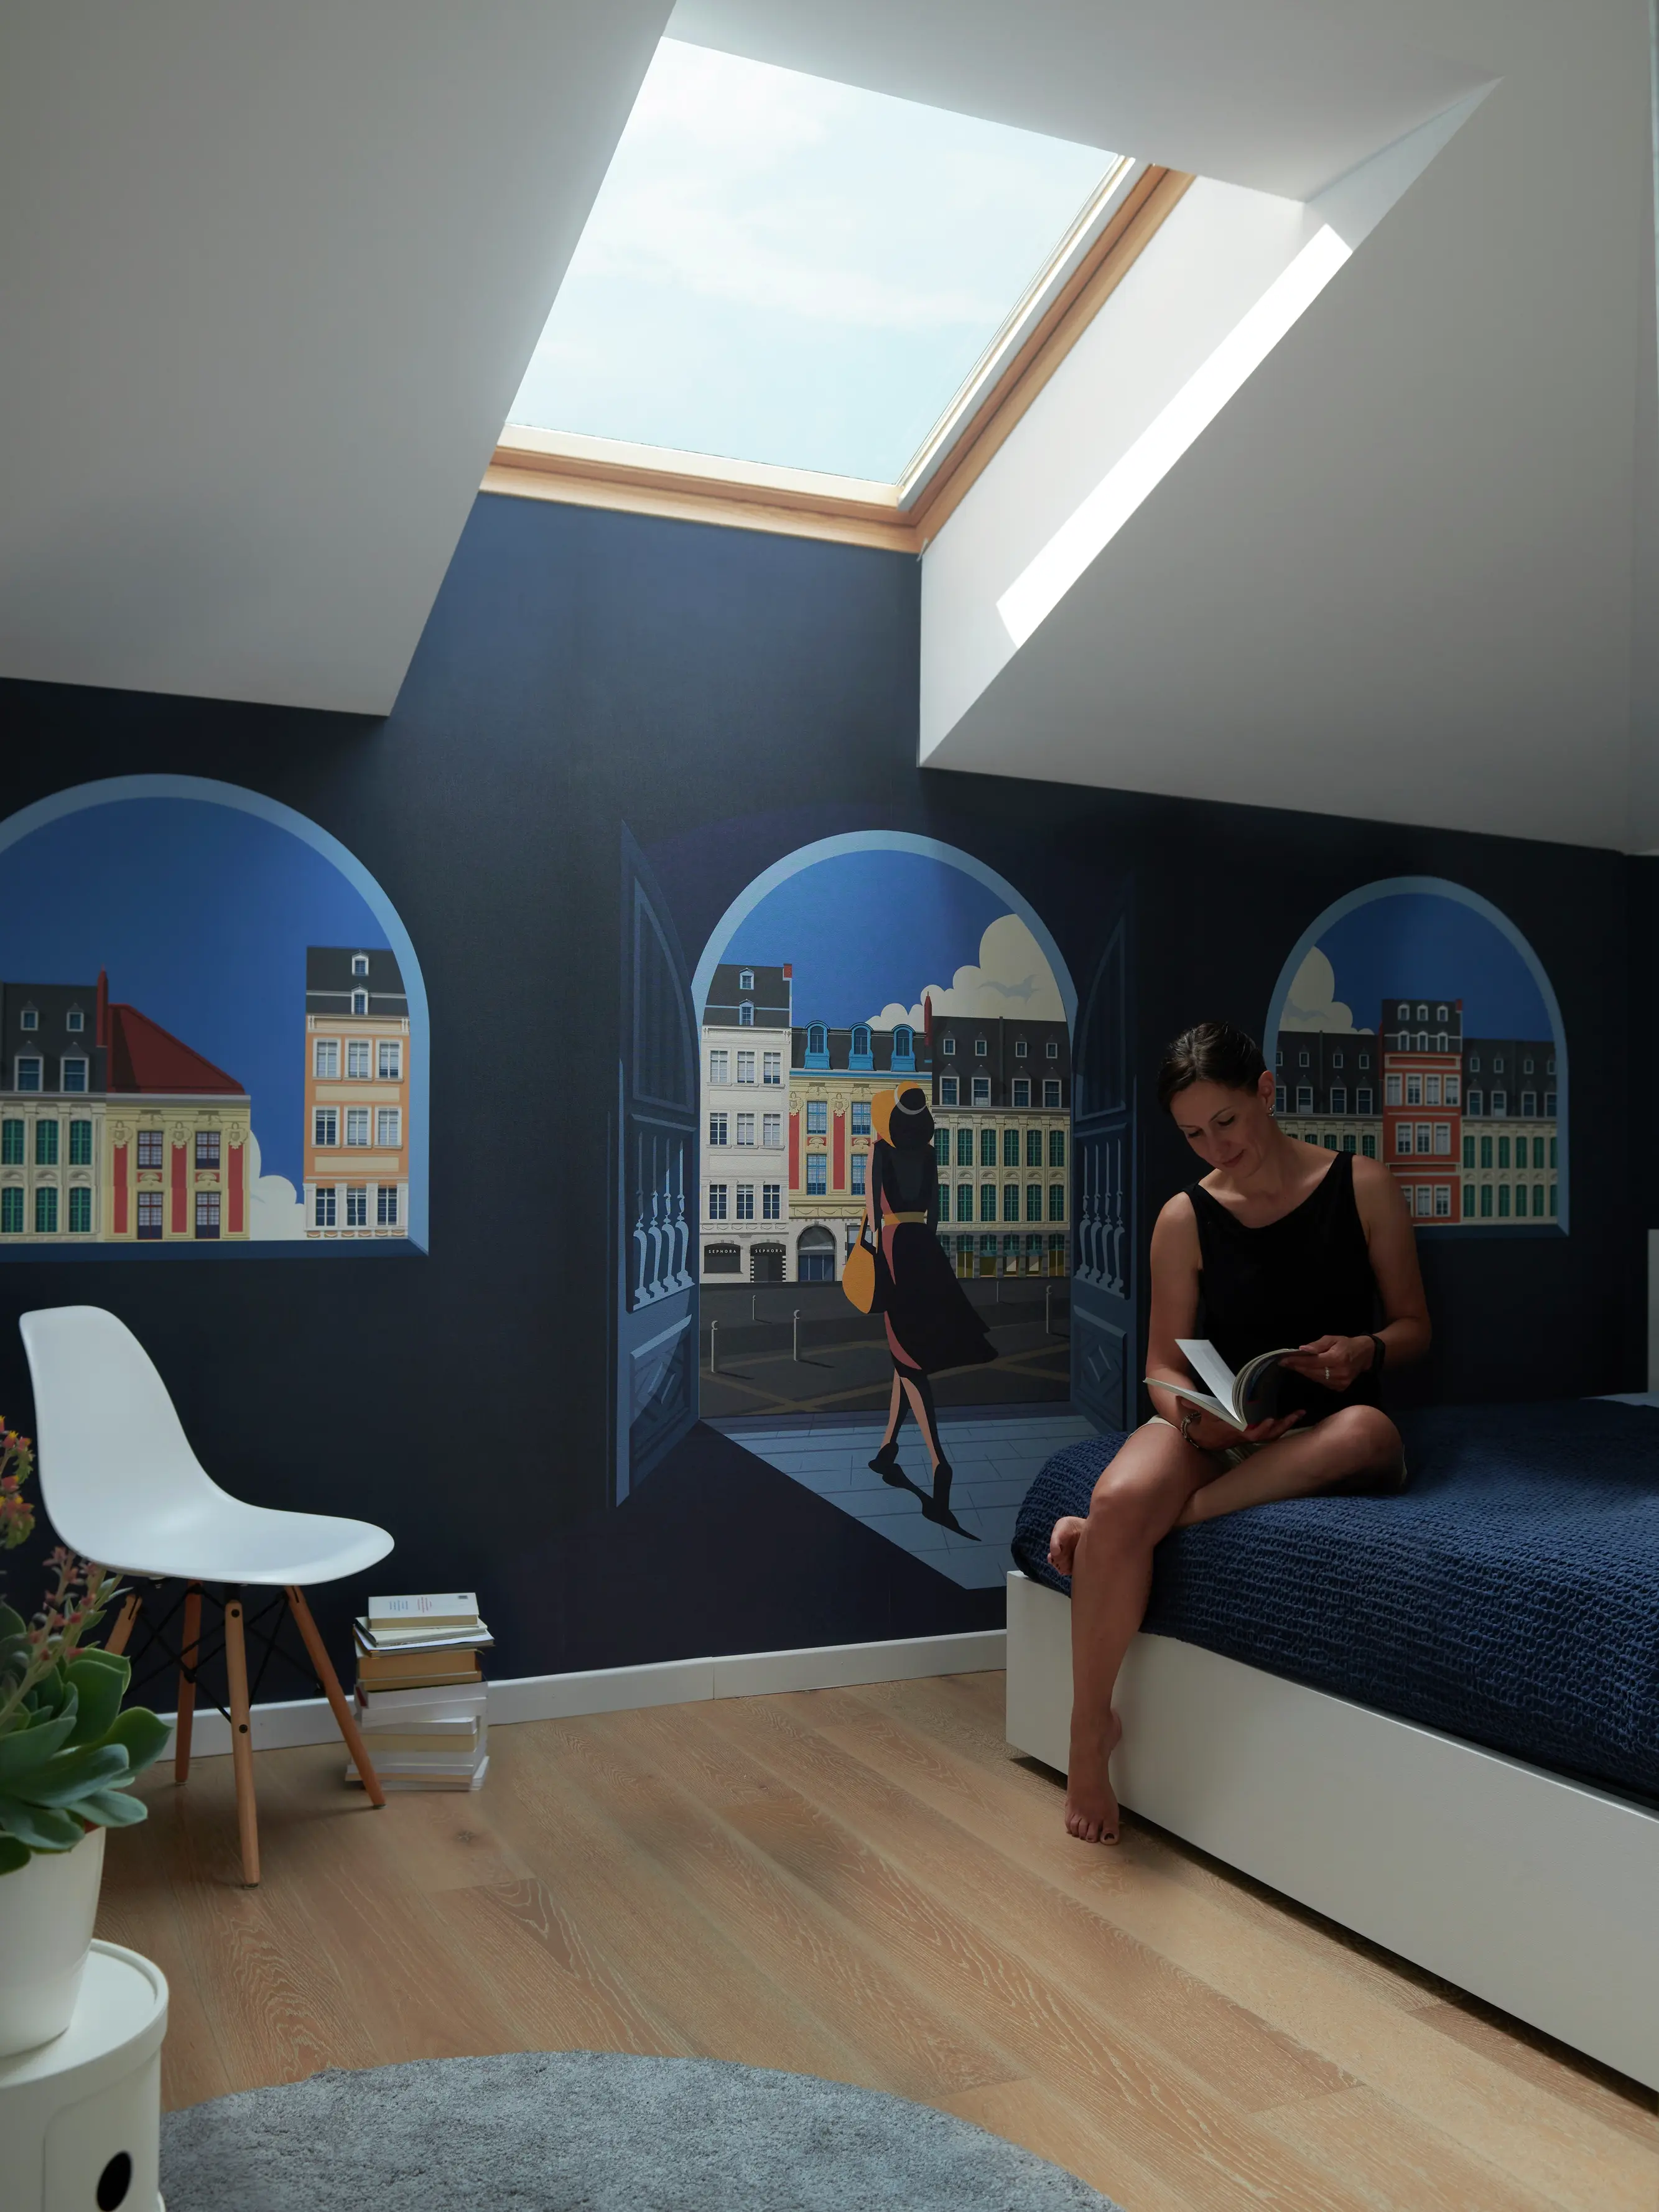 Chambre avec une peinture murale de paysage urbain et lumière naturelle provenant d'une fenêtre de toit VELUX.